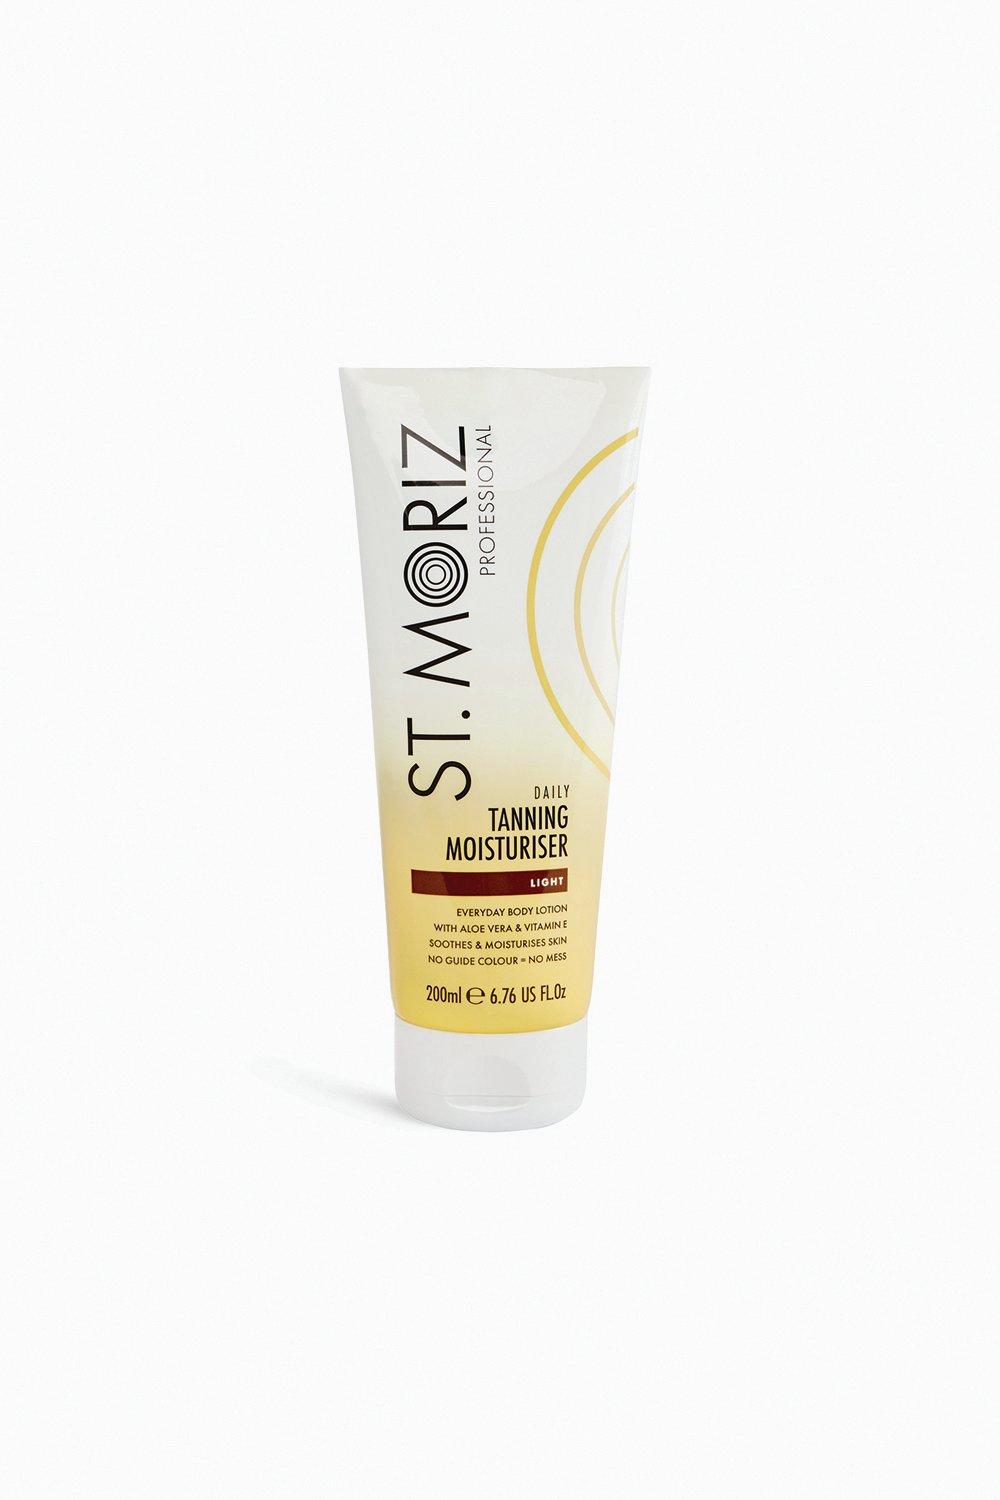 St. Moriz Professional Daily Tanning Moisturiser Light 200Ml, White